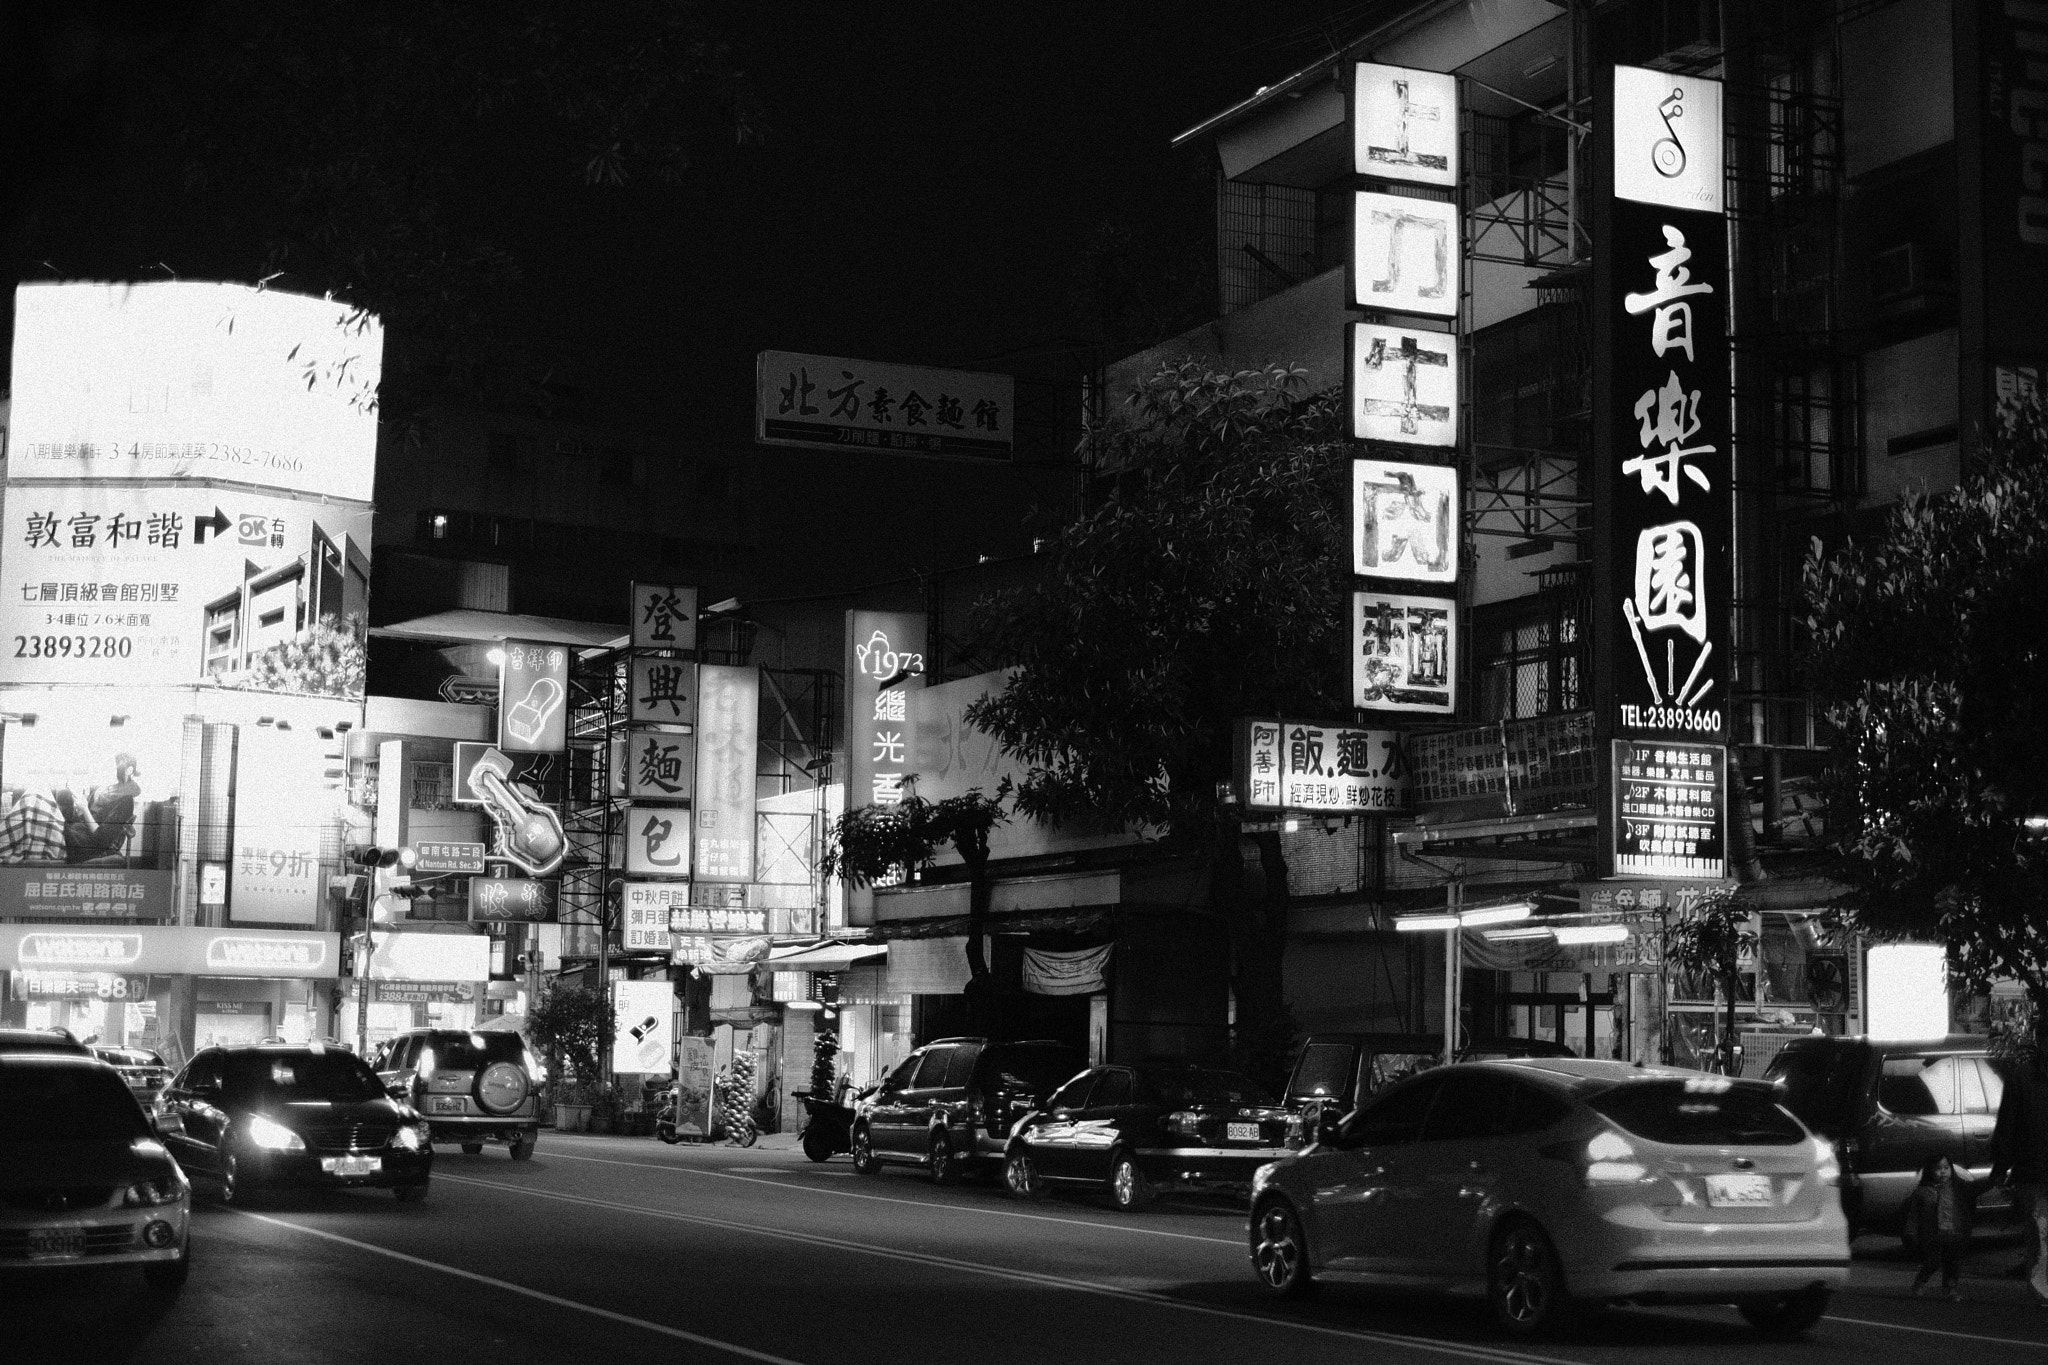 Fujifilm X-Pro2 sample photo. Dark night photography